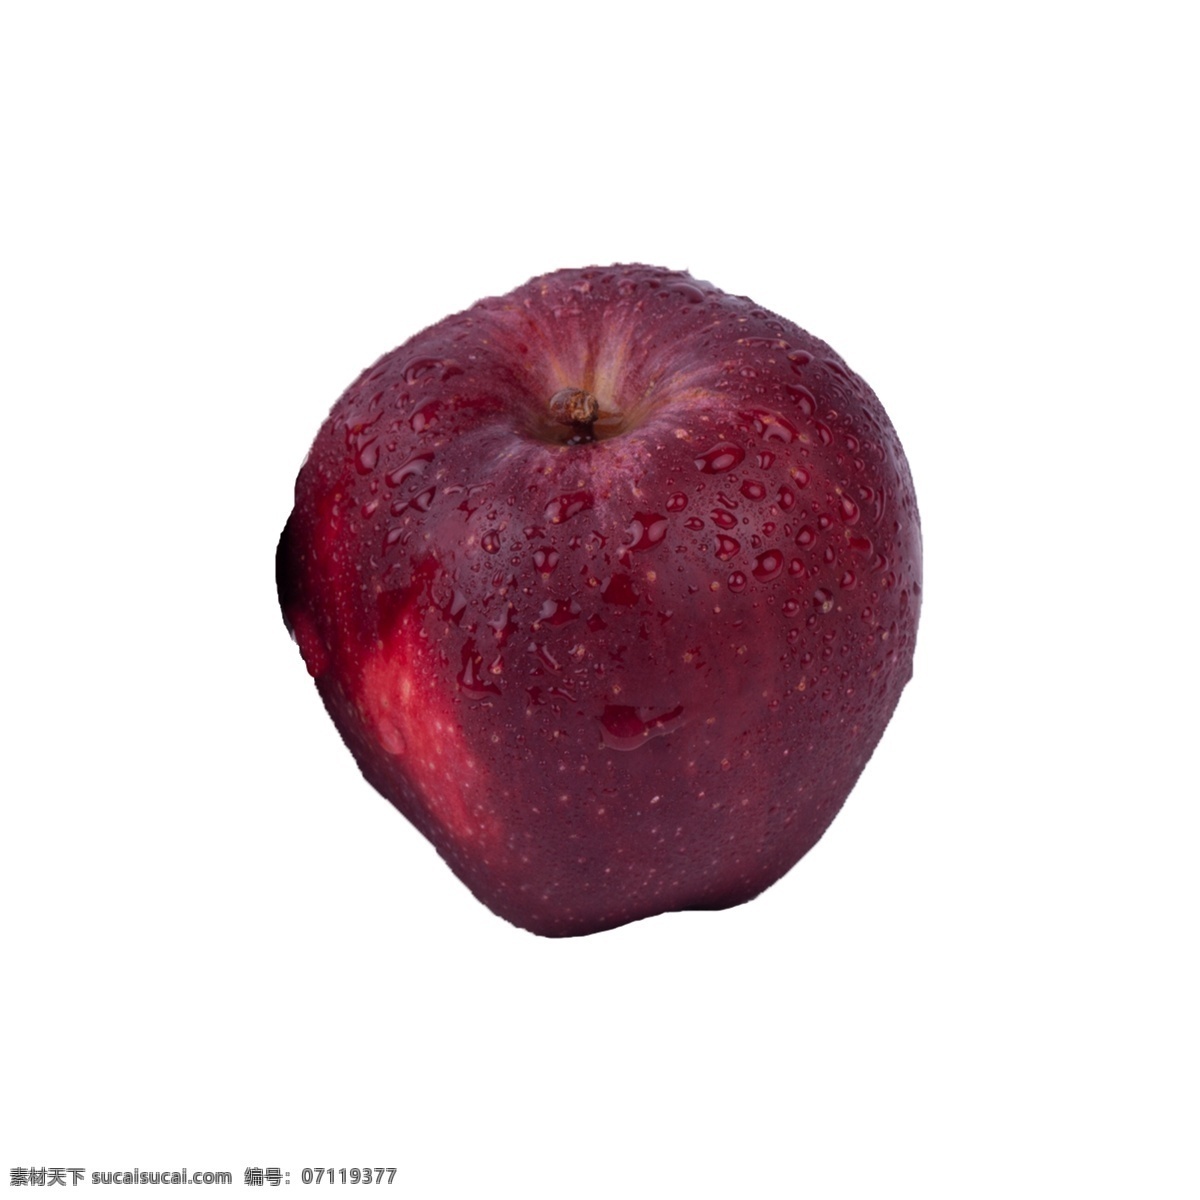 苹果 实拍 免 抠 红富士 红苹果 实物 拍摄 摆拍 红富士免抠 植物 进口 甘甜 水果 营养